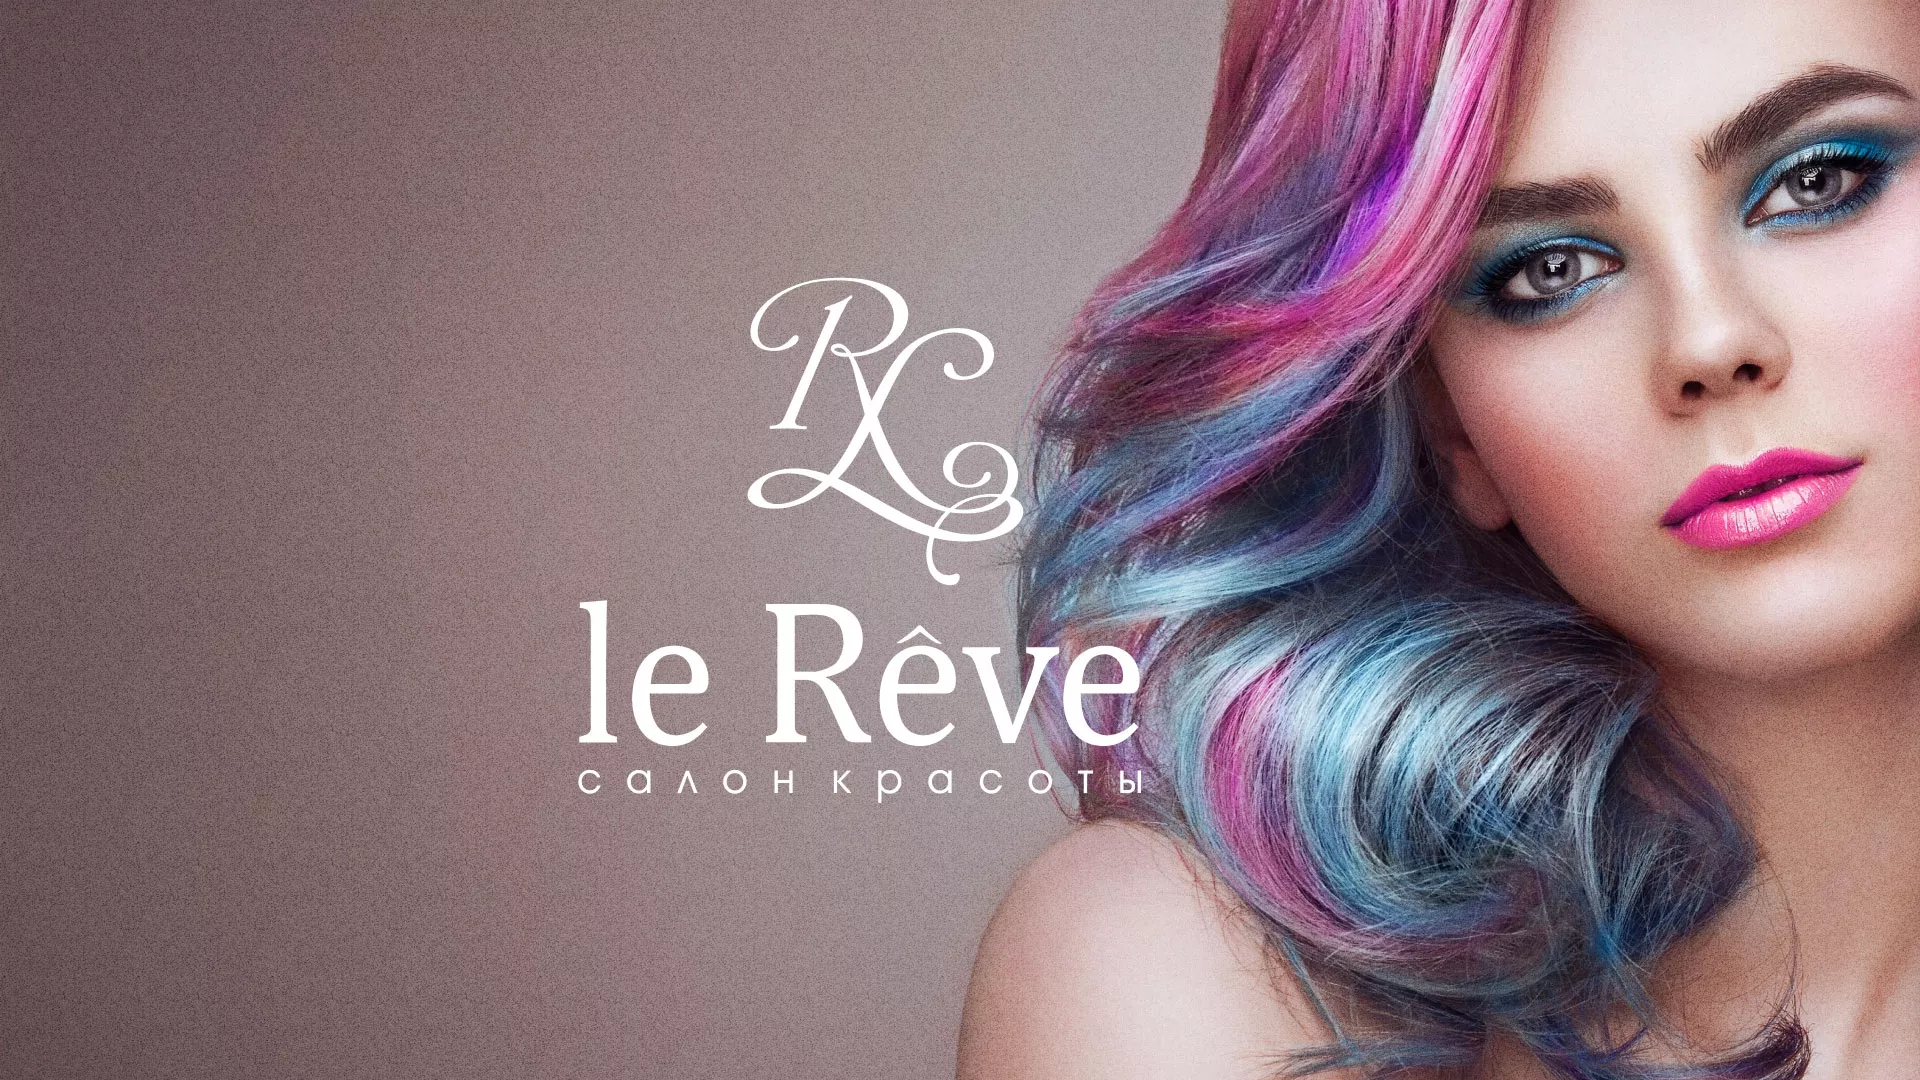 Создание сайта для салона красоты «Le Reve» в Струнино